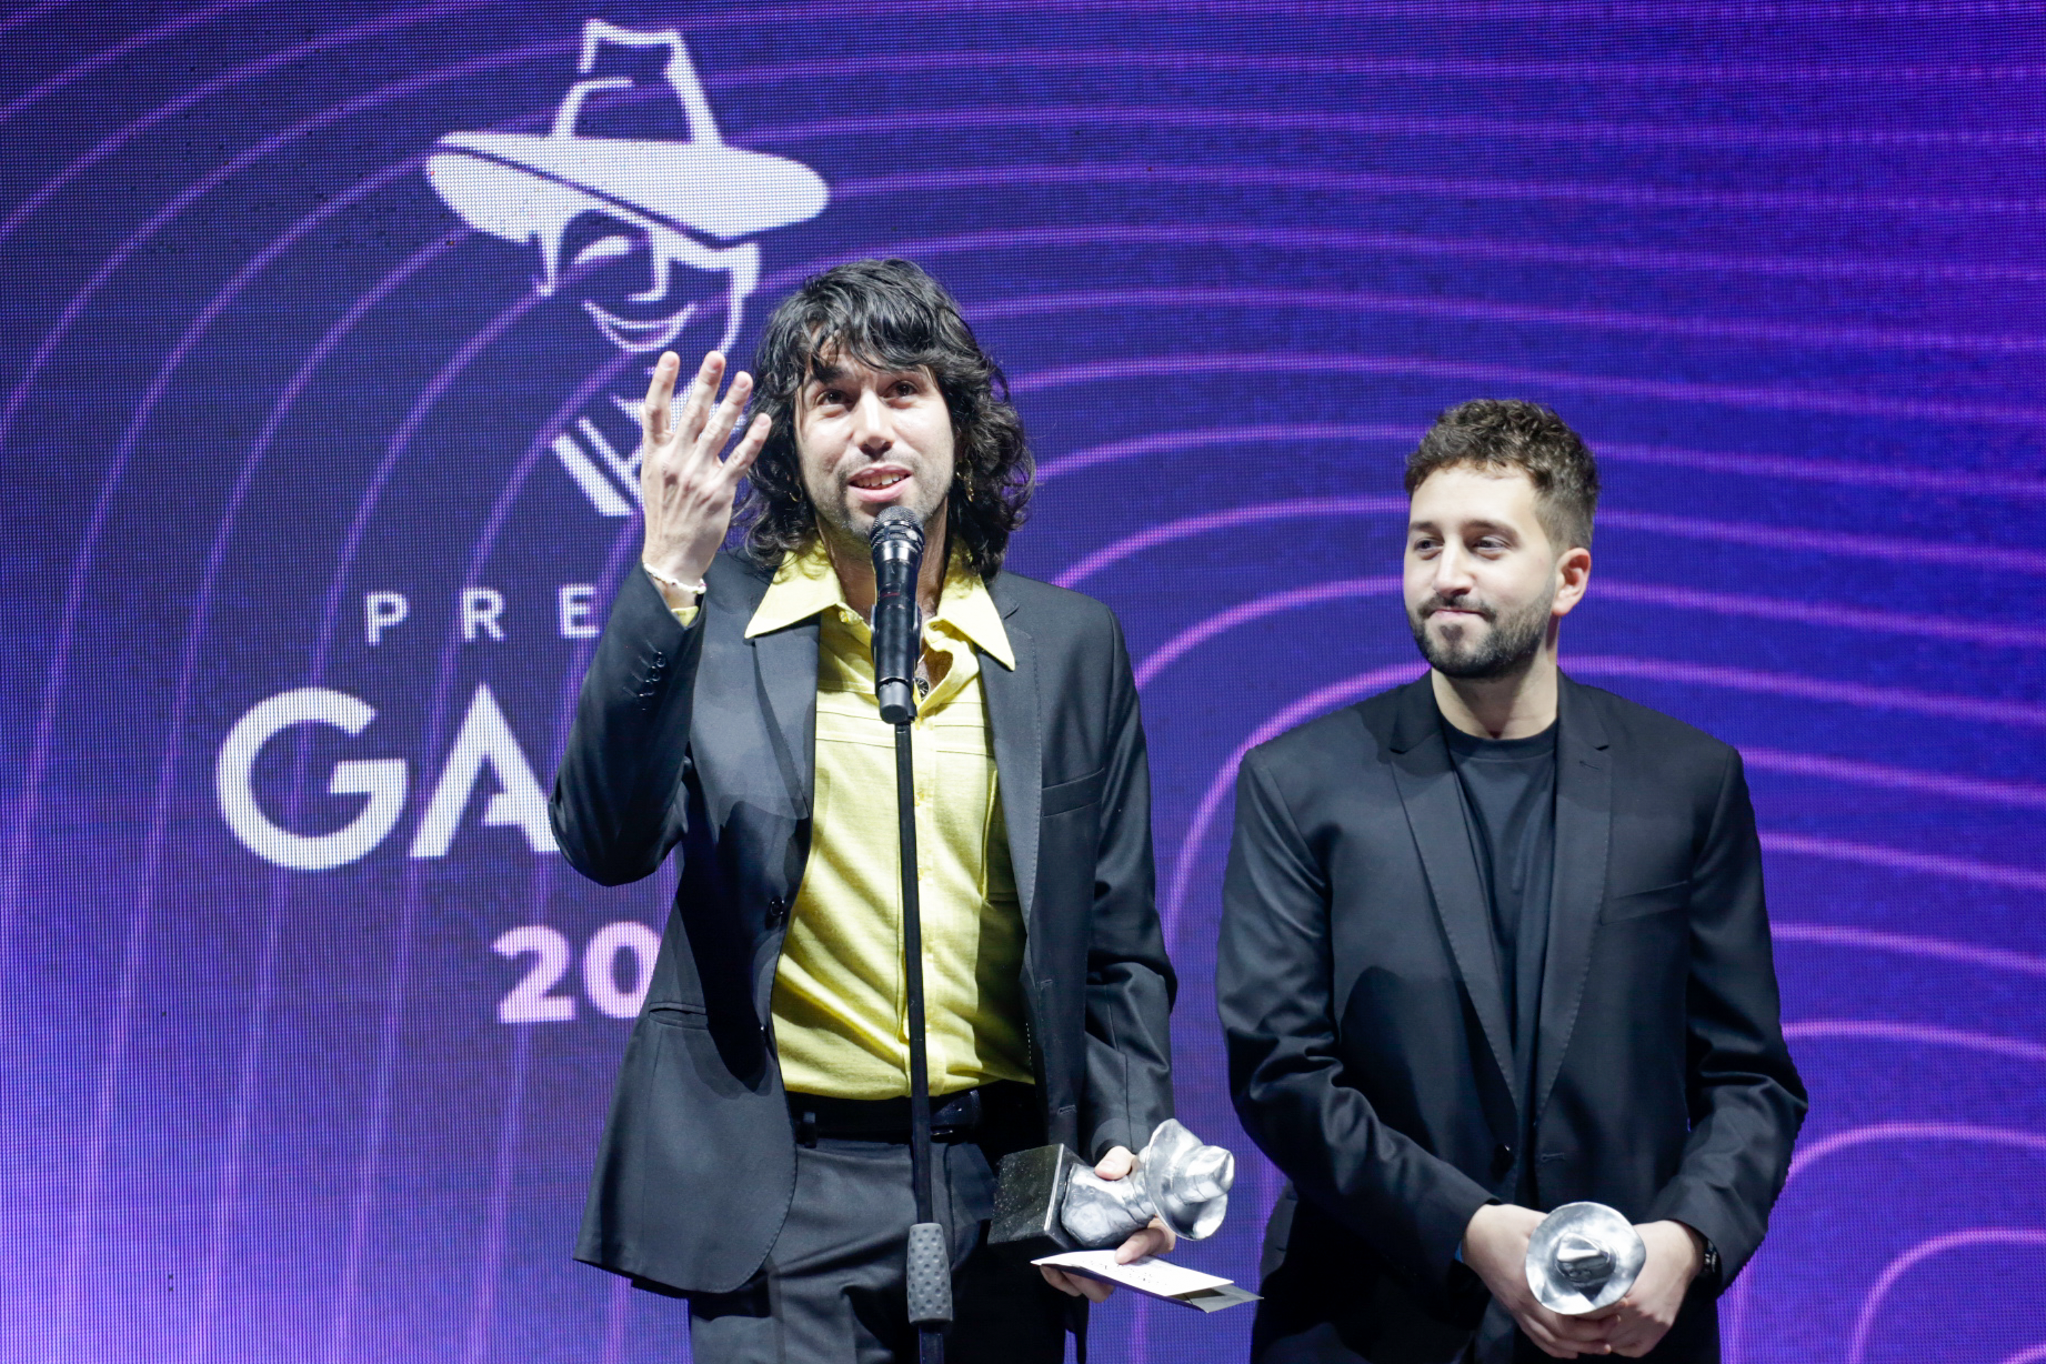 La dirección - Conociendo Rusia ganó como Mejor álbum de artista rock (Prensa: Premios Gardel)